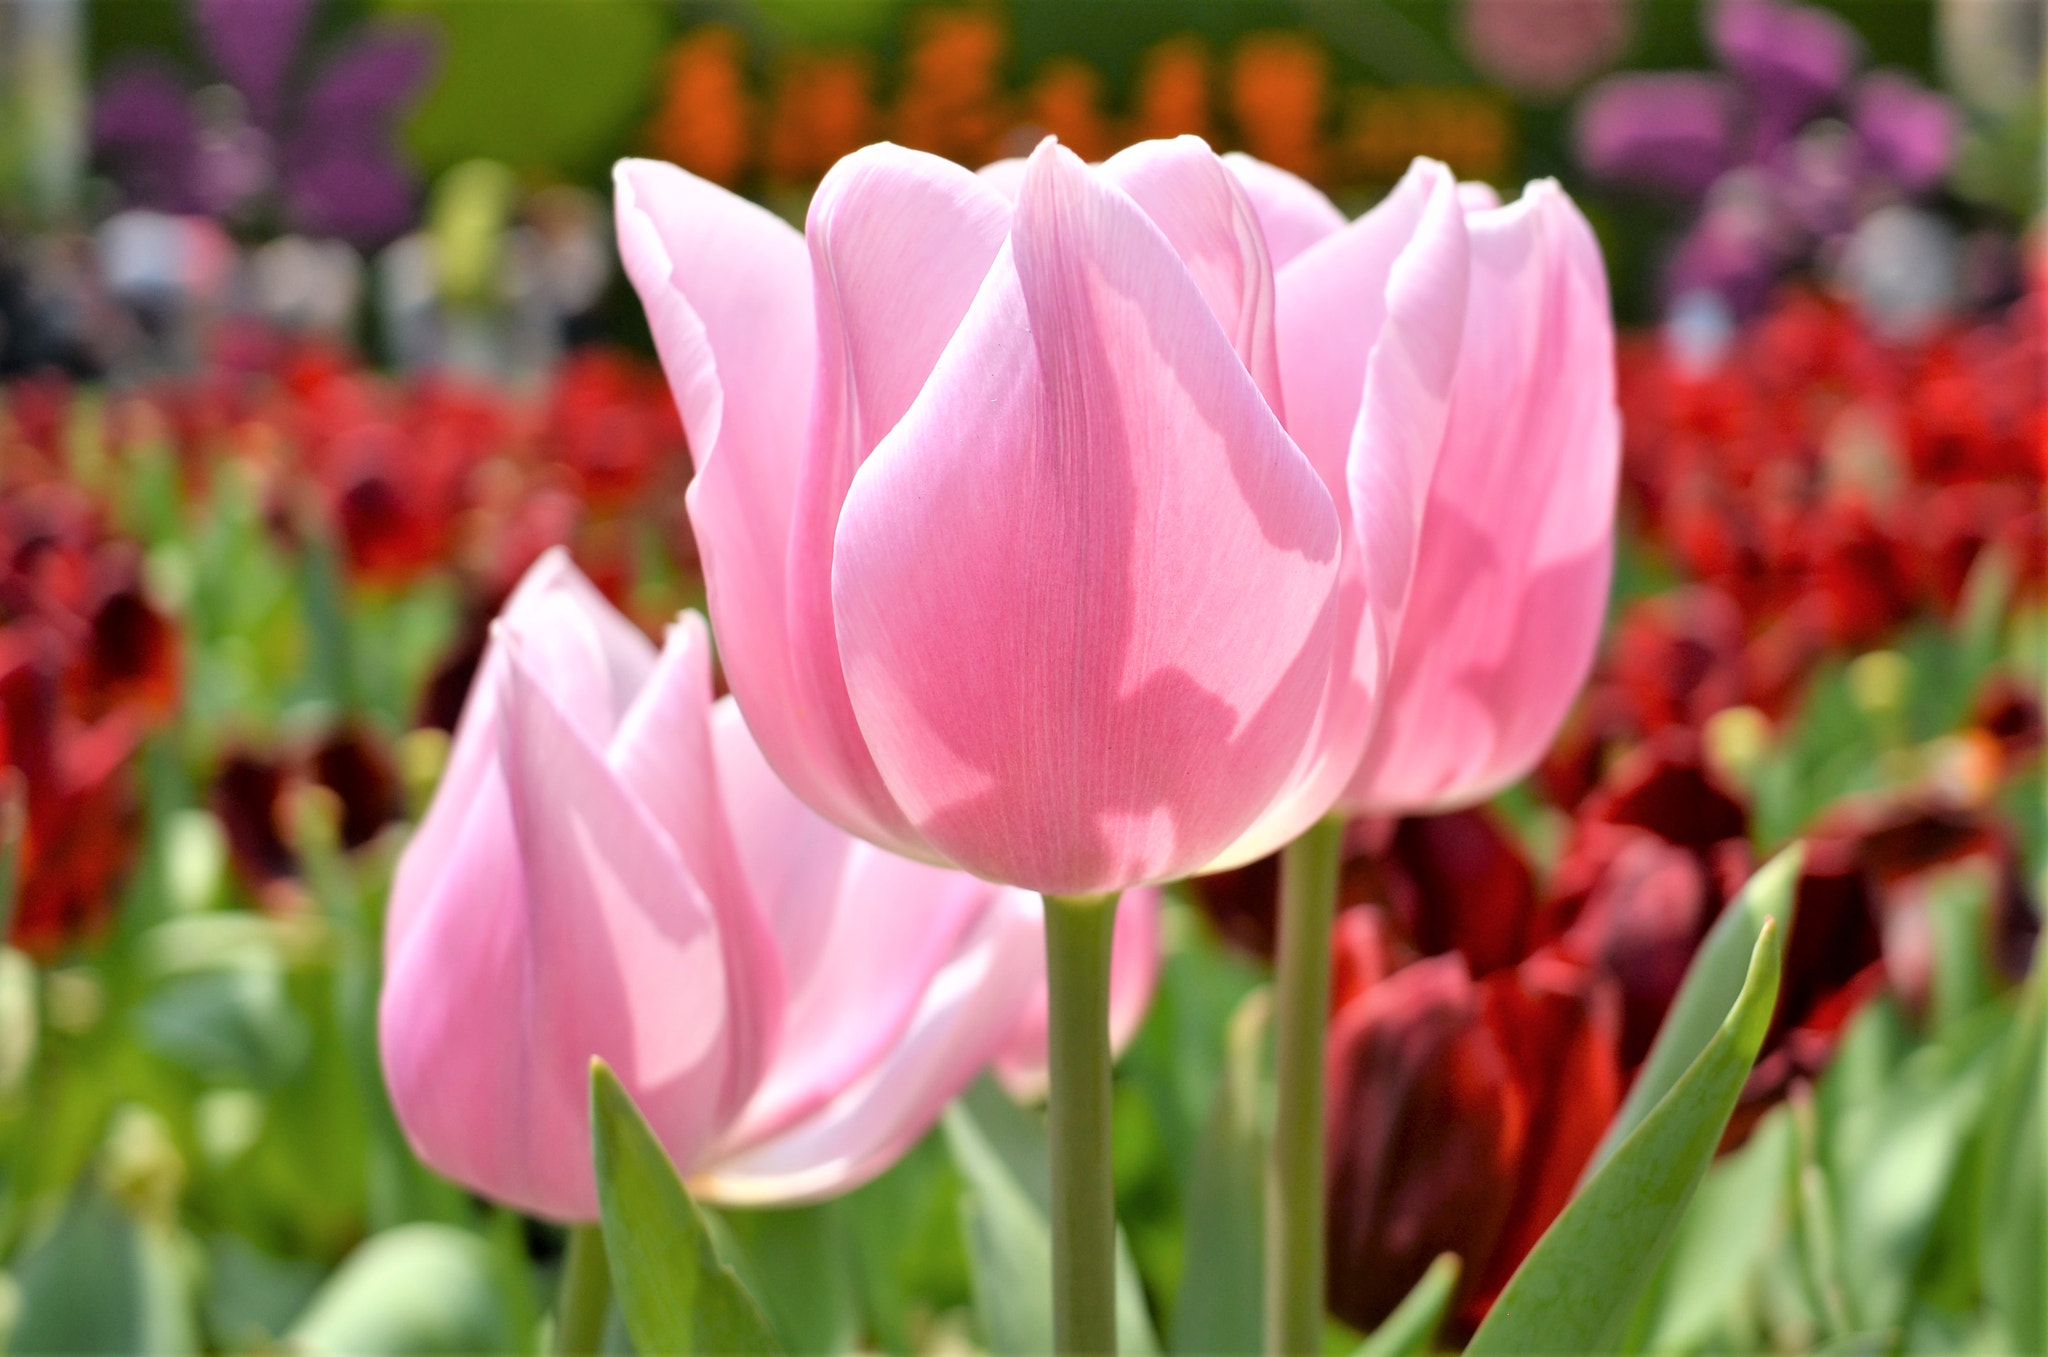 Nikon Coolpix A sample photo. Pink tulip photography